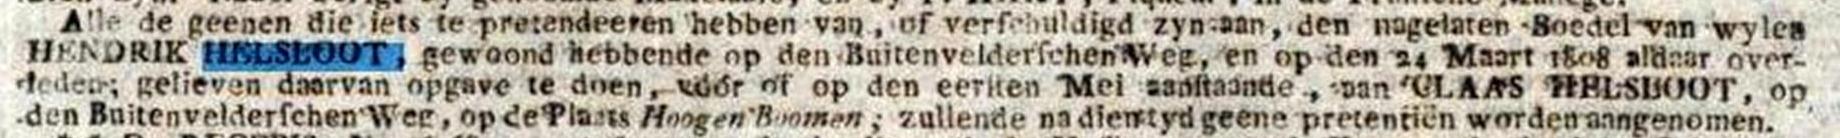 Hendricus Helsloot 1736 oproep boedel;  Amsterdamse courant 12-04-1808